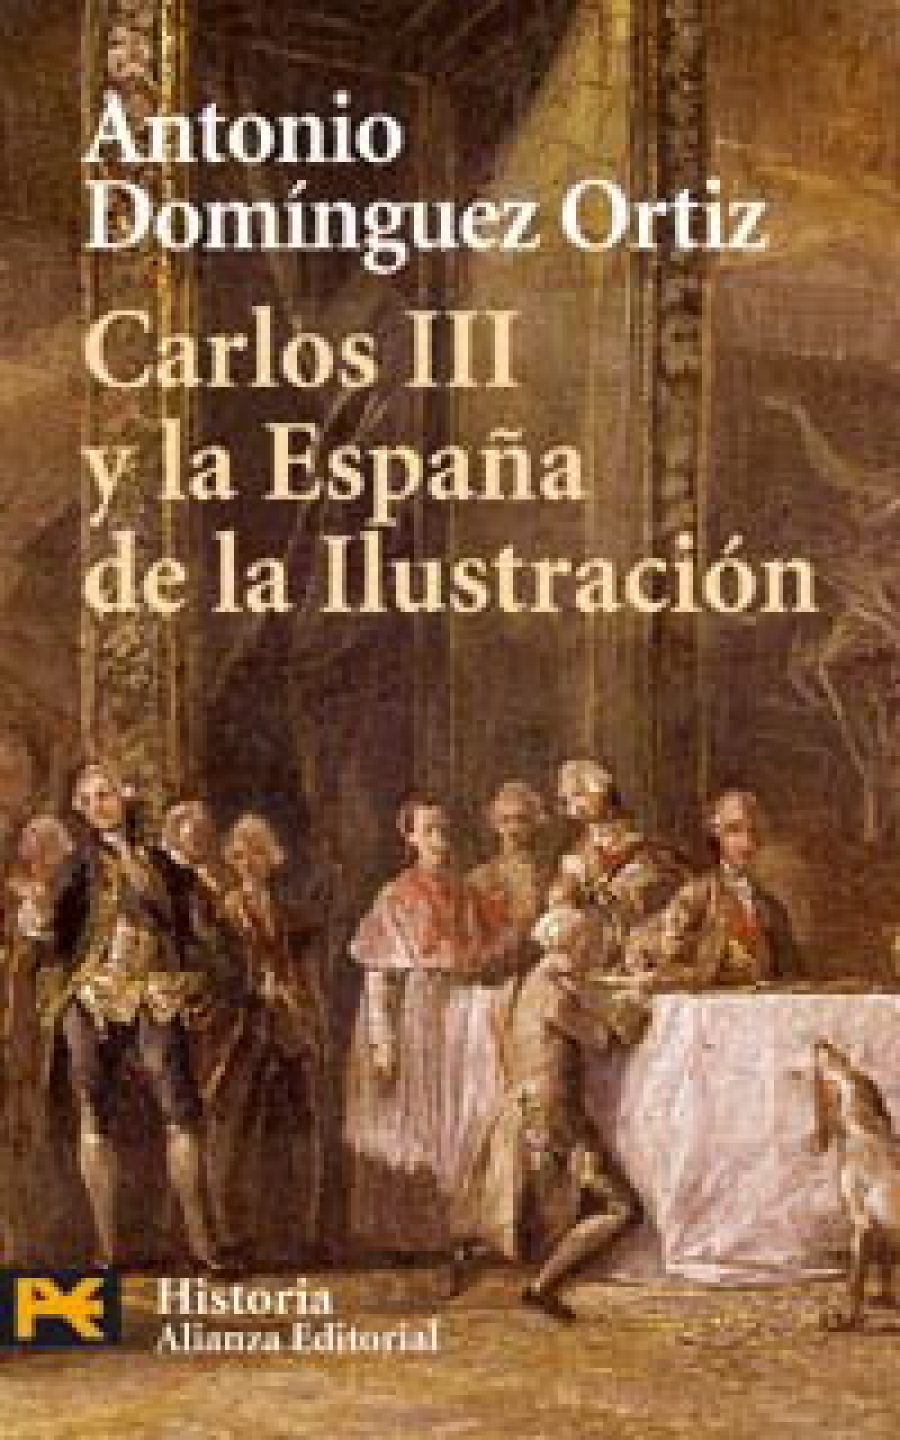 Dominguez Ortiz, Antonio Carlos III y la Espana de la Ilustracion 